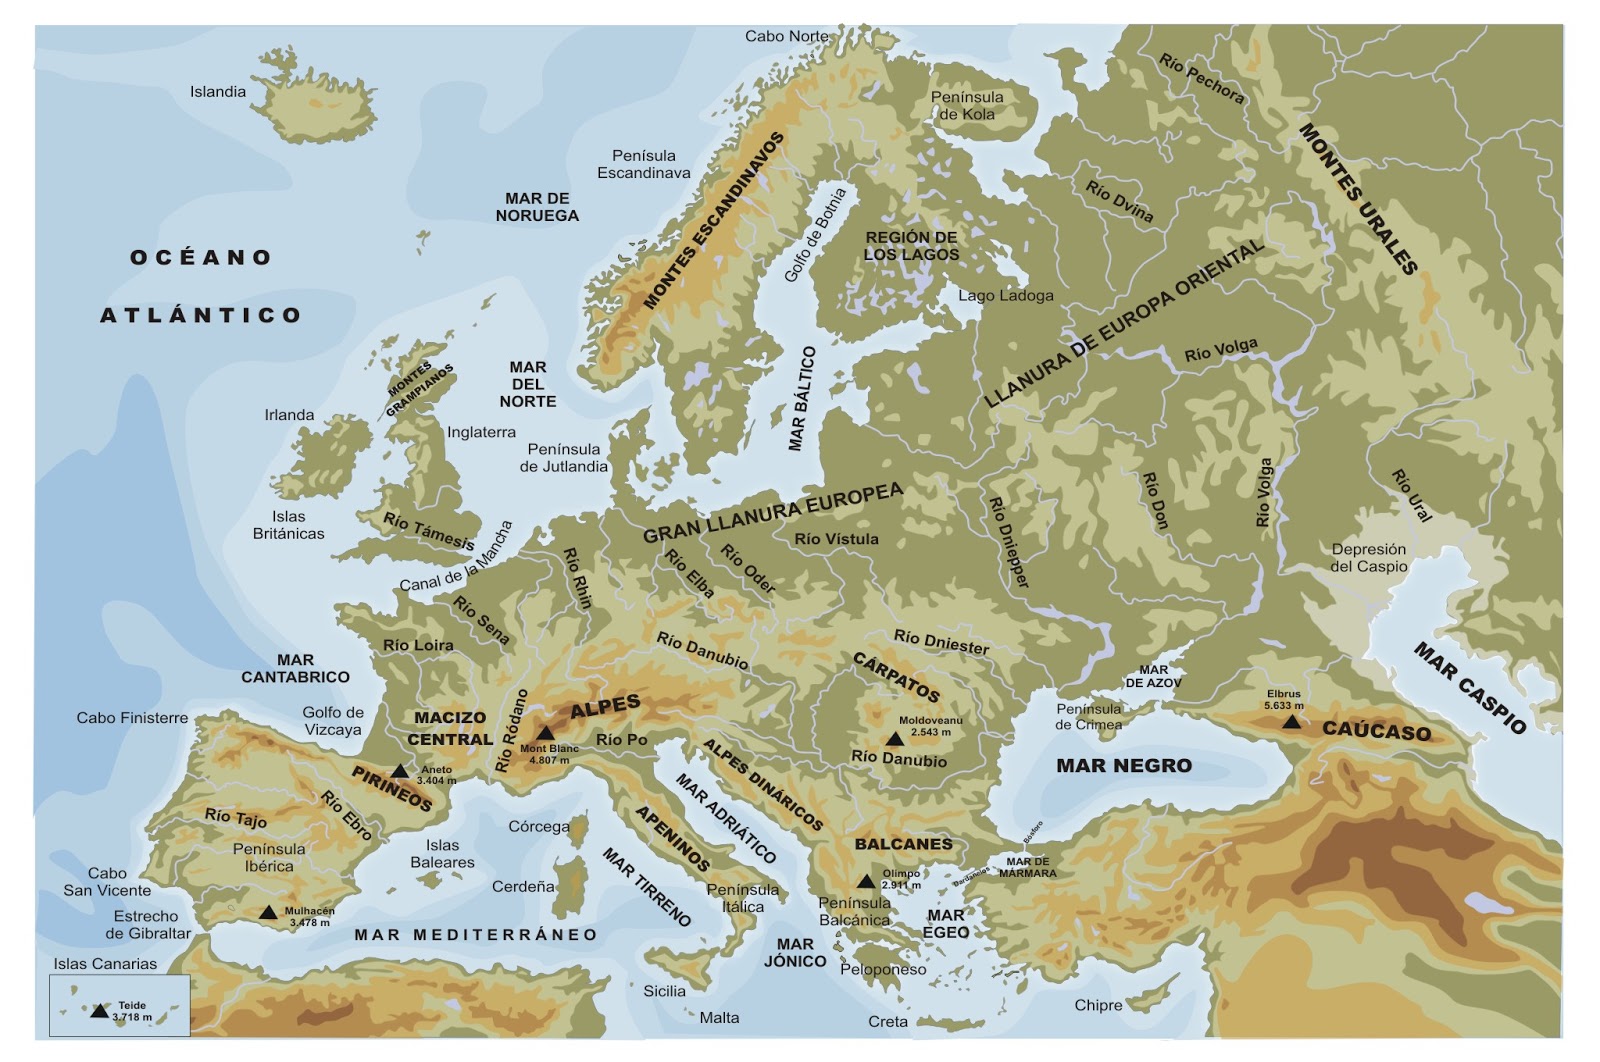 Estudiamos los continentes: Europa